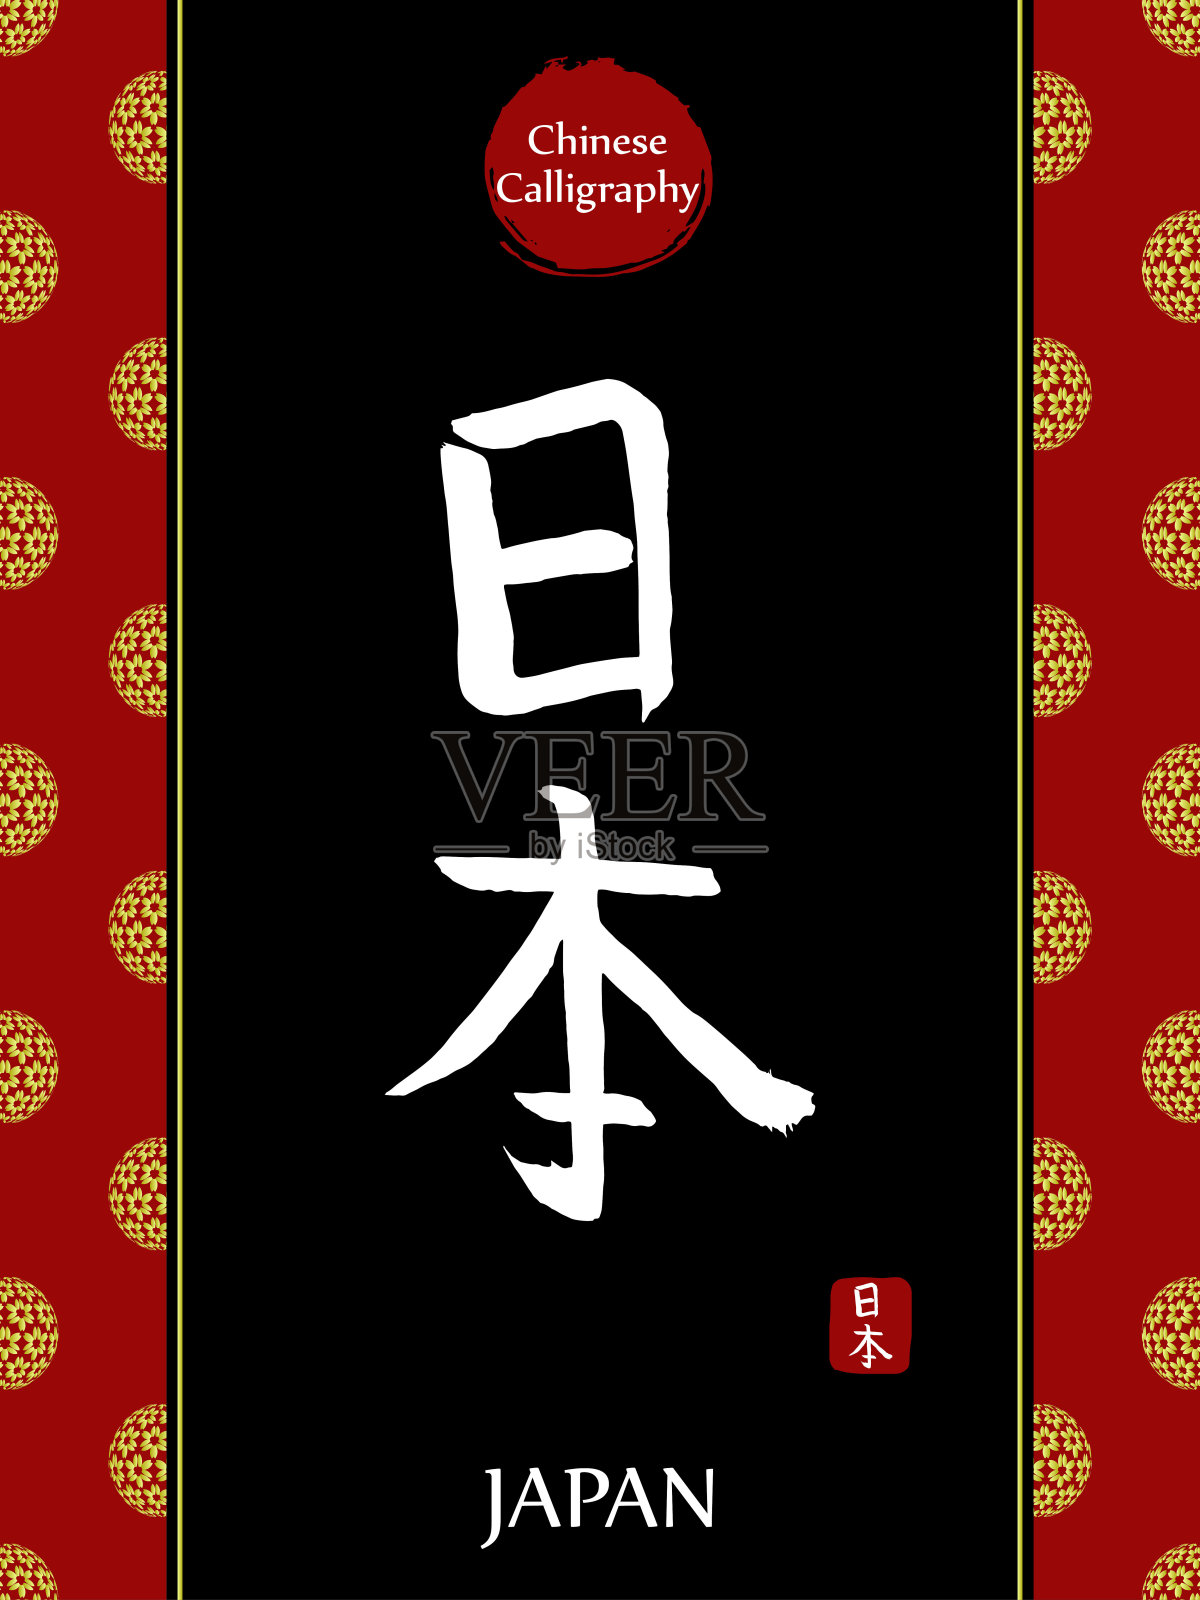 中国书法象形文字翻译:日本。亚洲金花球农历新年图案。向量中国符号在黑色背景。手绘图画文字。毛笔书法插画图片素材